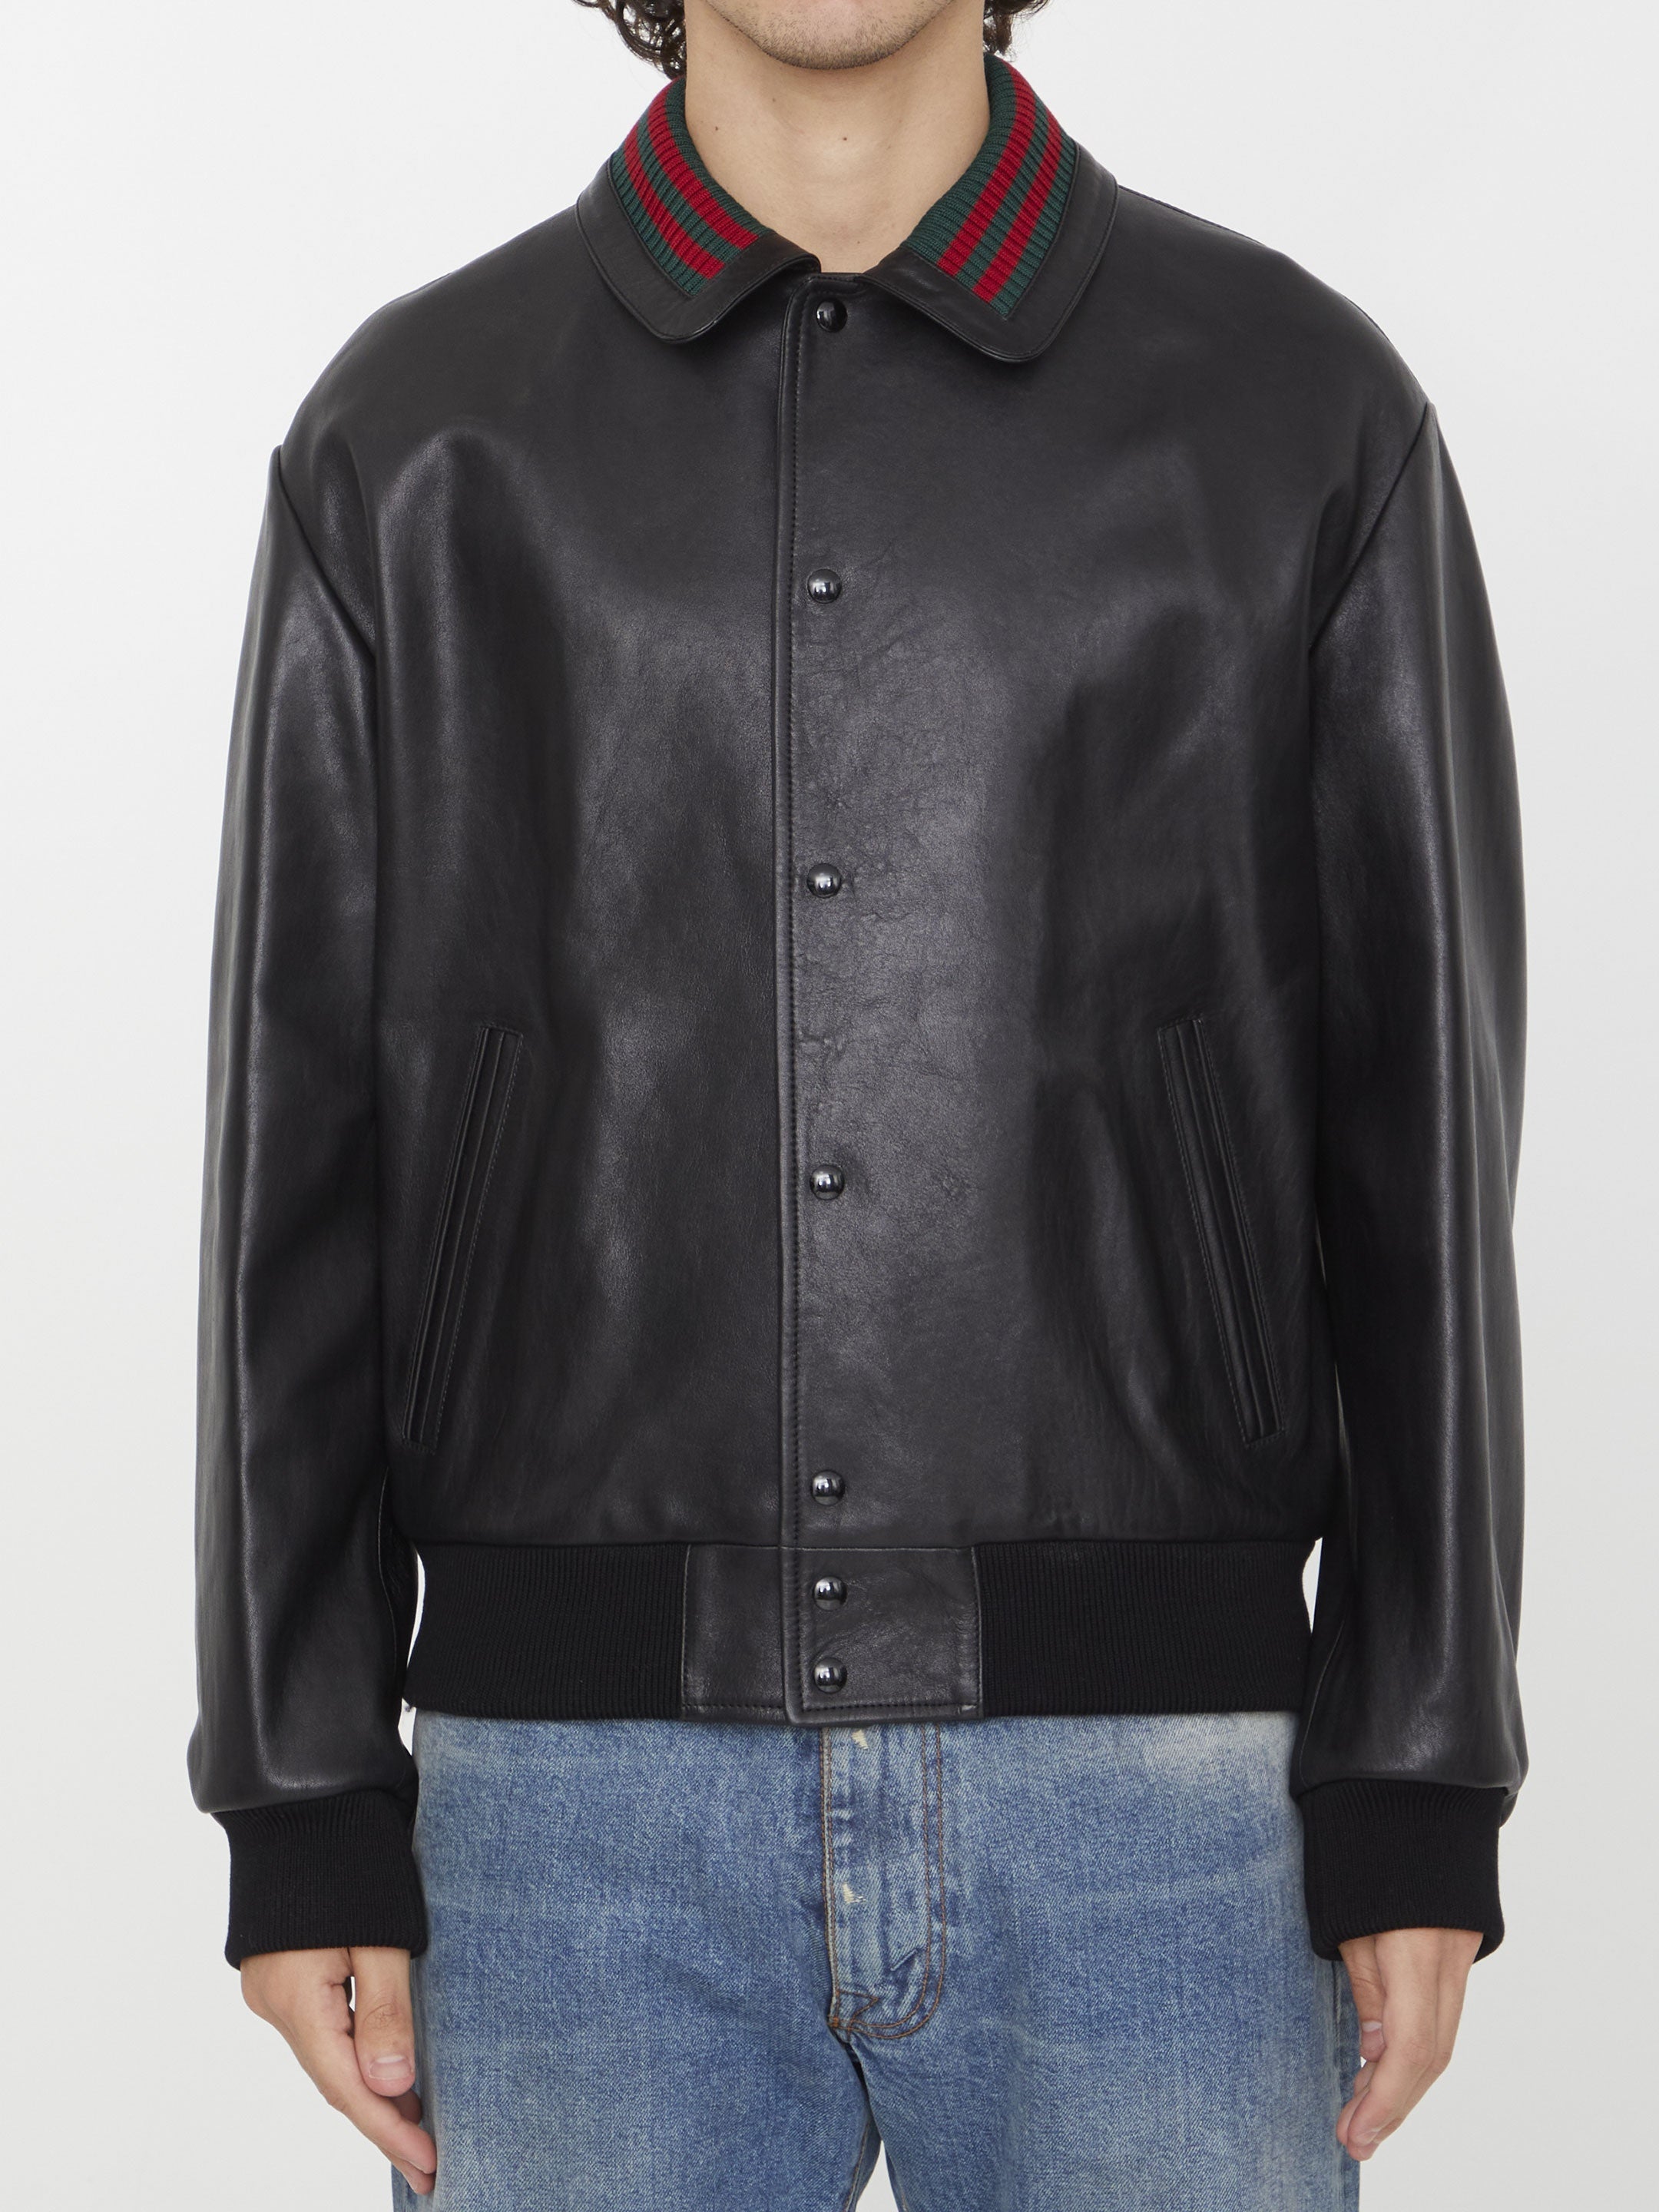 Black leather bomber jacket